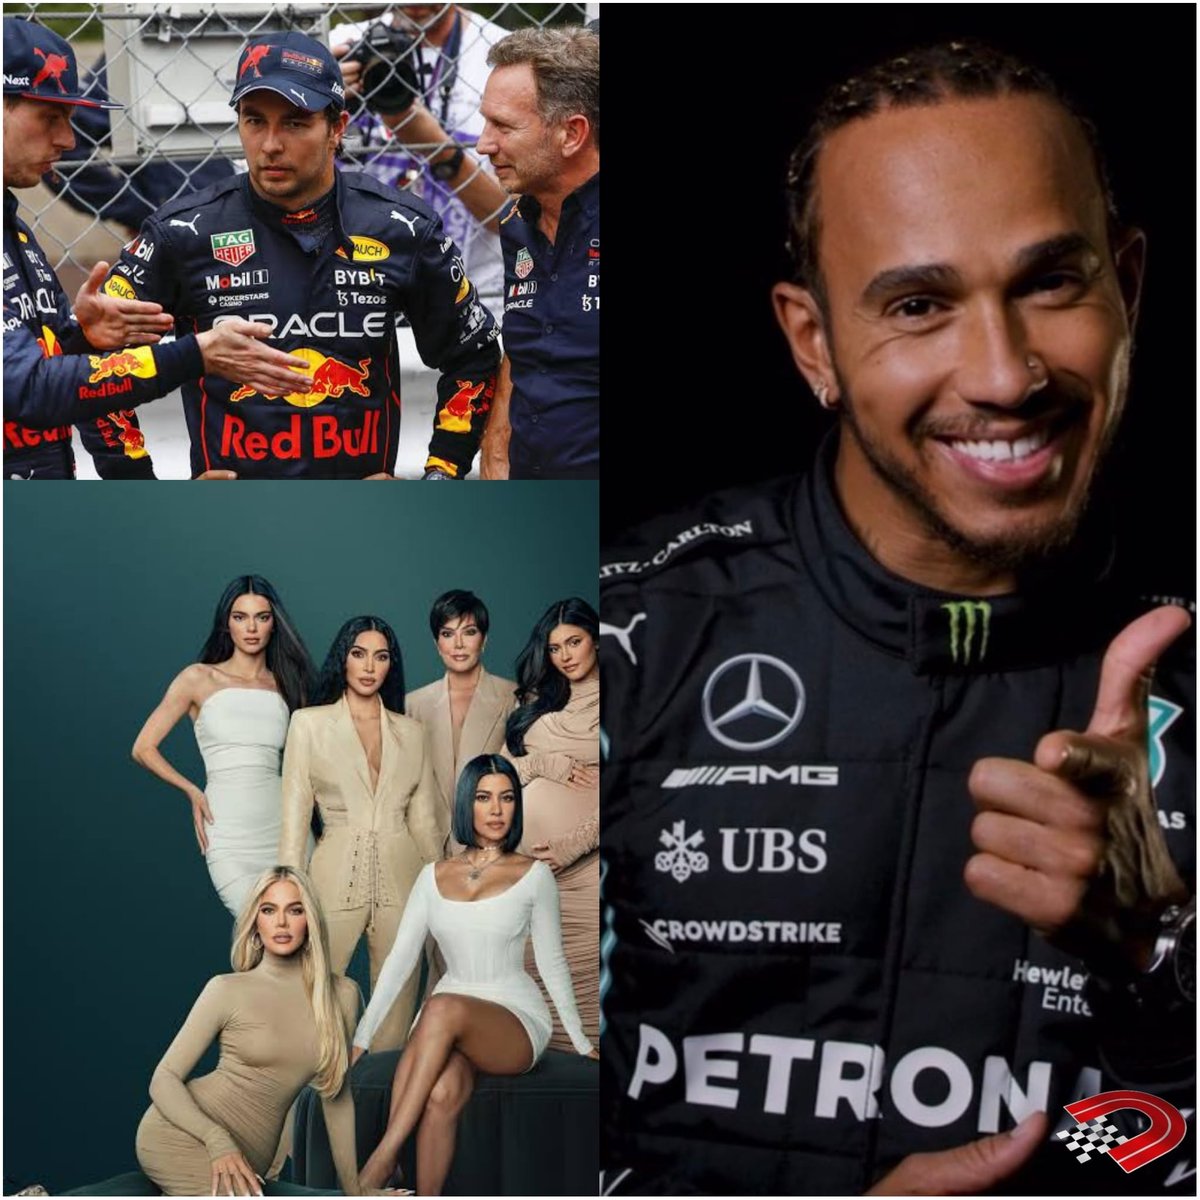 💥 Hamilton'ın yeni eğlencesi Red Bull! 🎤 Lewis Hamilton: ‘‘Red Bull’da yaşananlar Kardashian şovu gibi! Oldukça komik, son birkaç gündür duyduğum bazı şeyler çok eğlenceliydi. Eminim hepsi Netflix'te olacak, harika olacak.’’